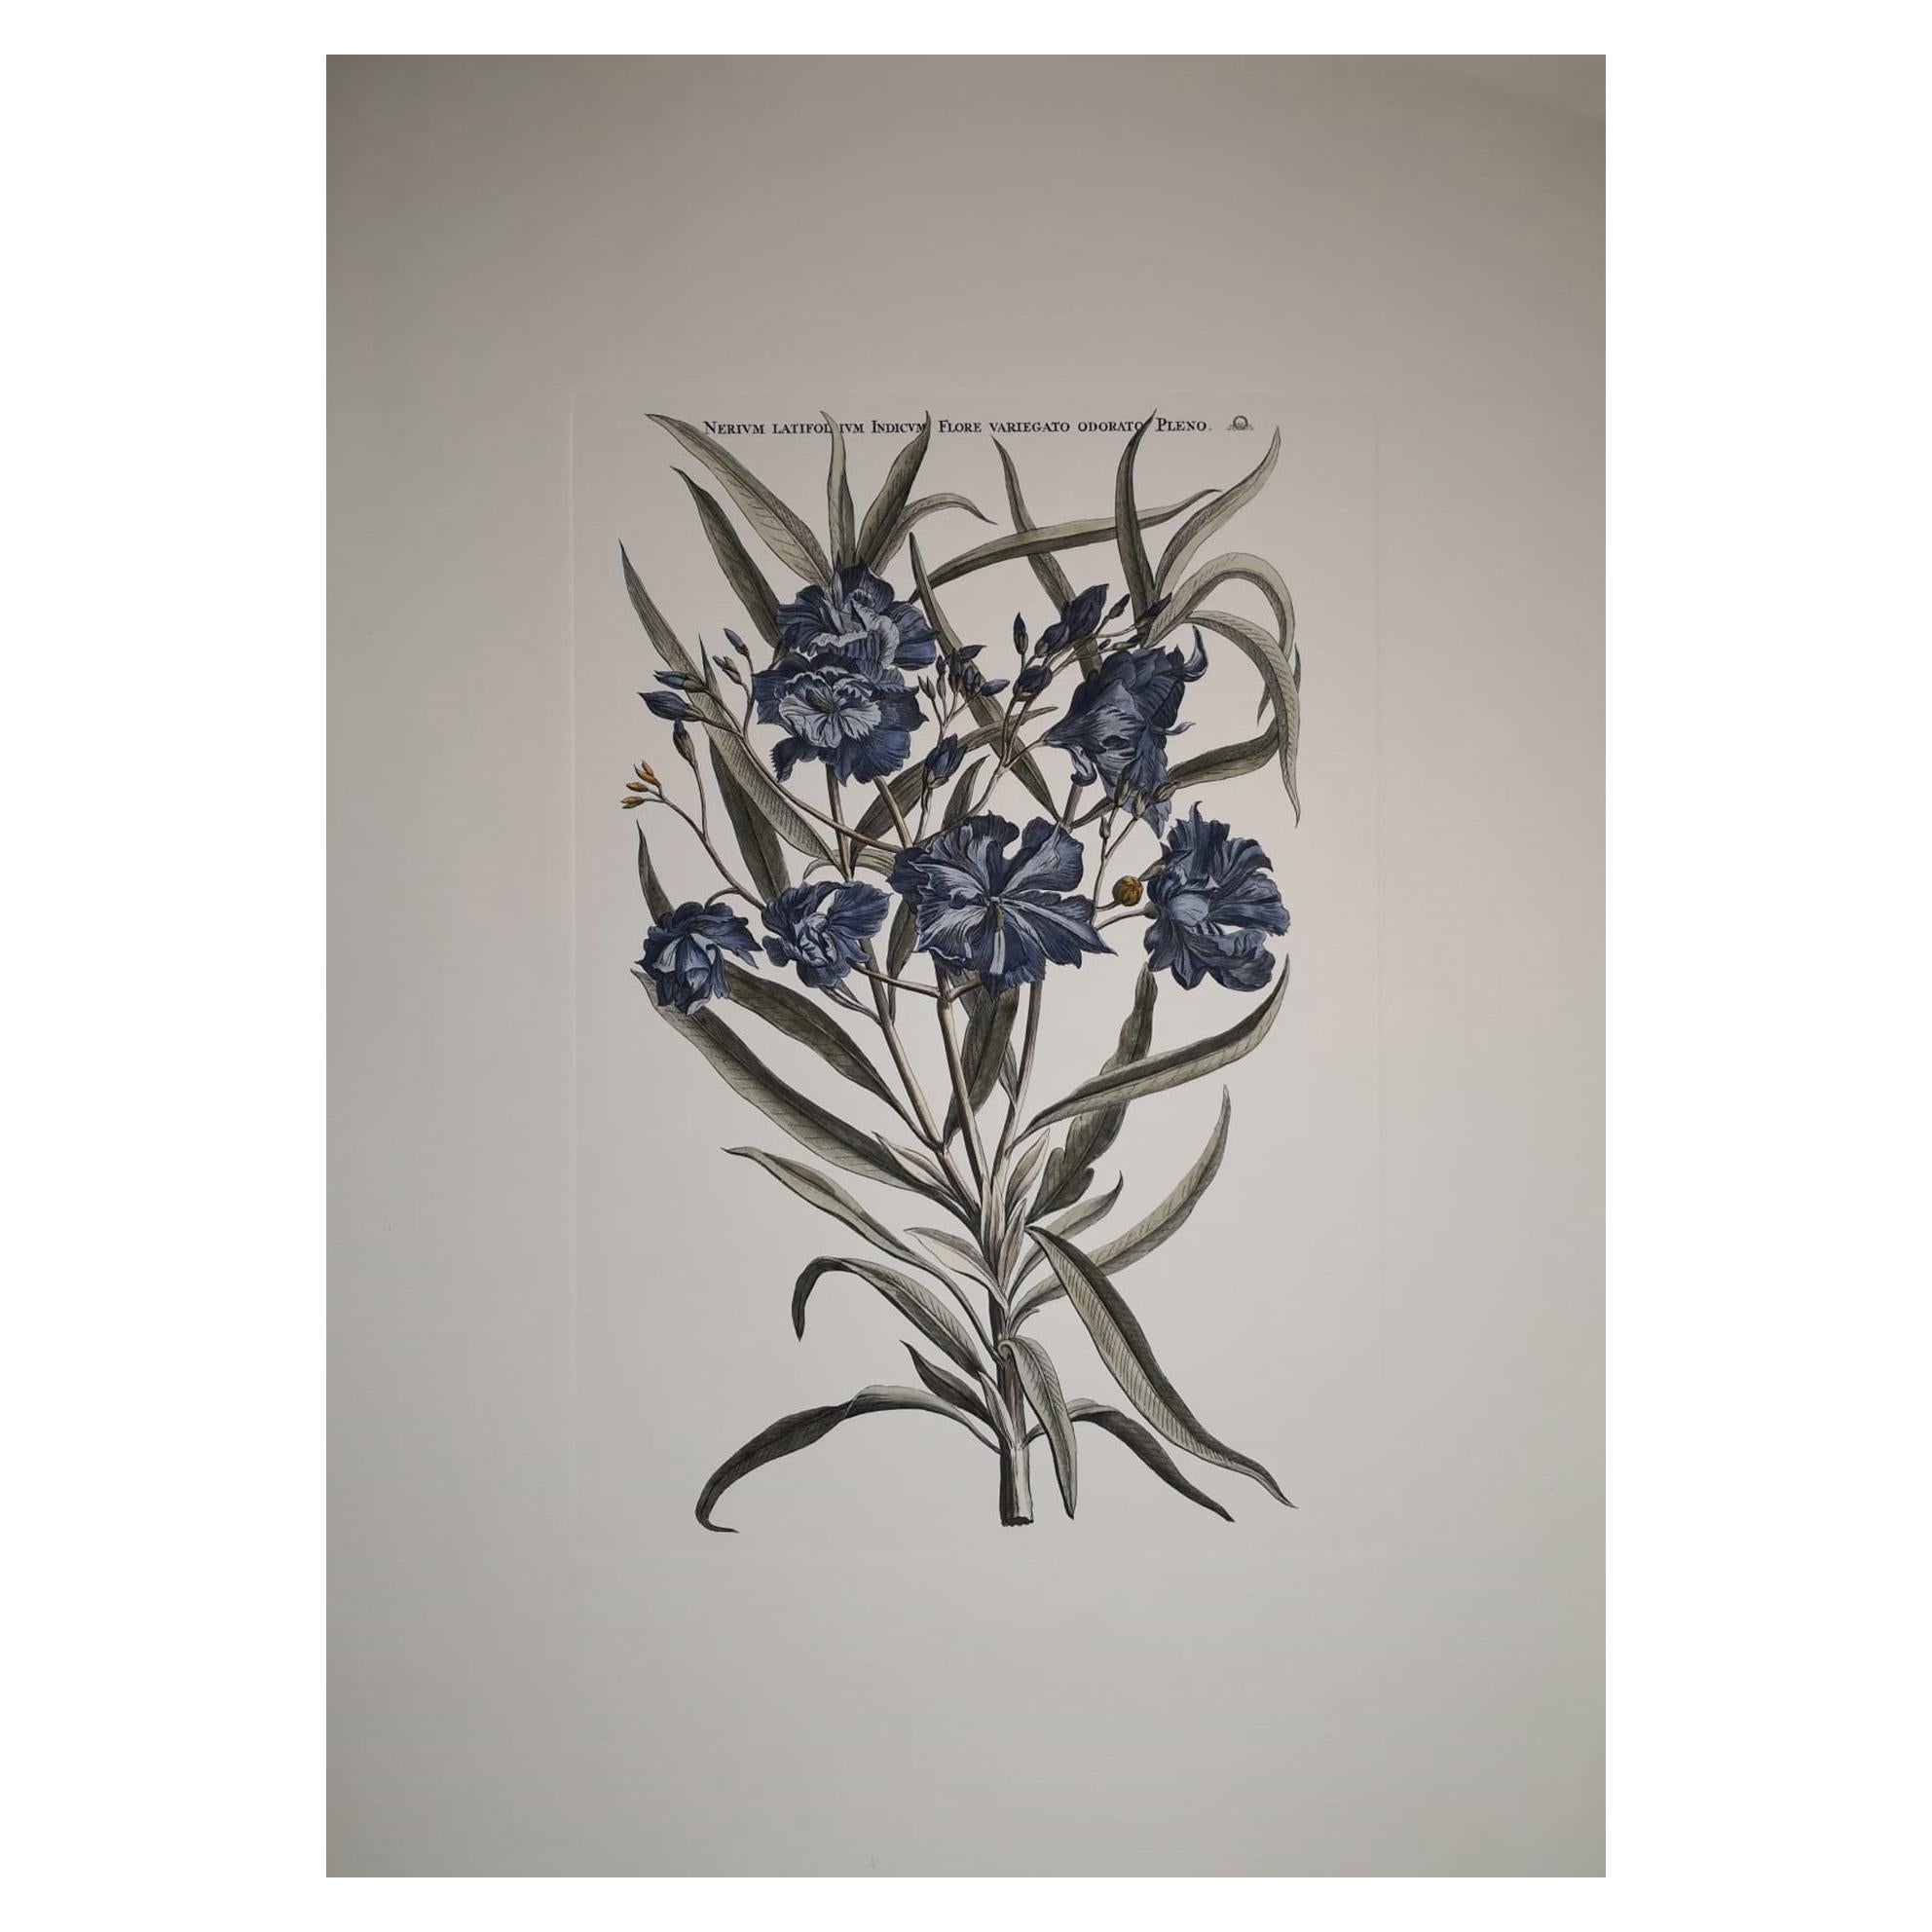 Italian Contemporary Hand Painted Botanical Print "Nerium Latifolium" For Sale